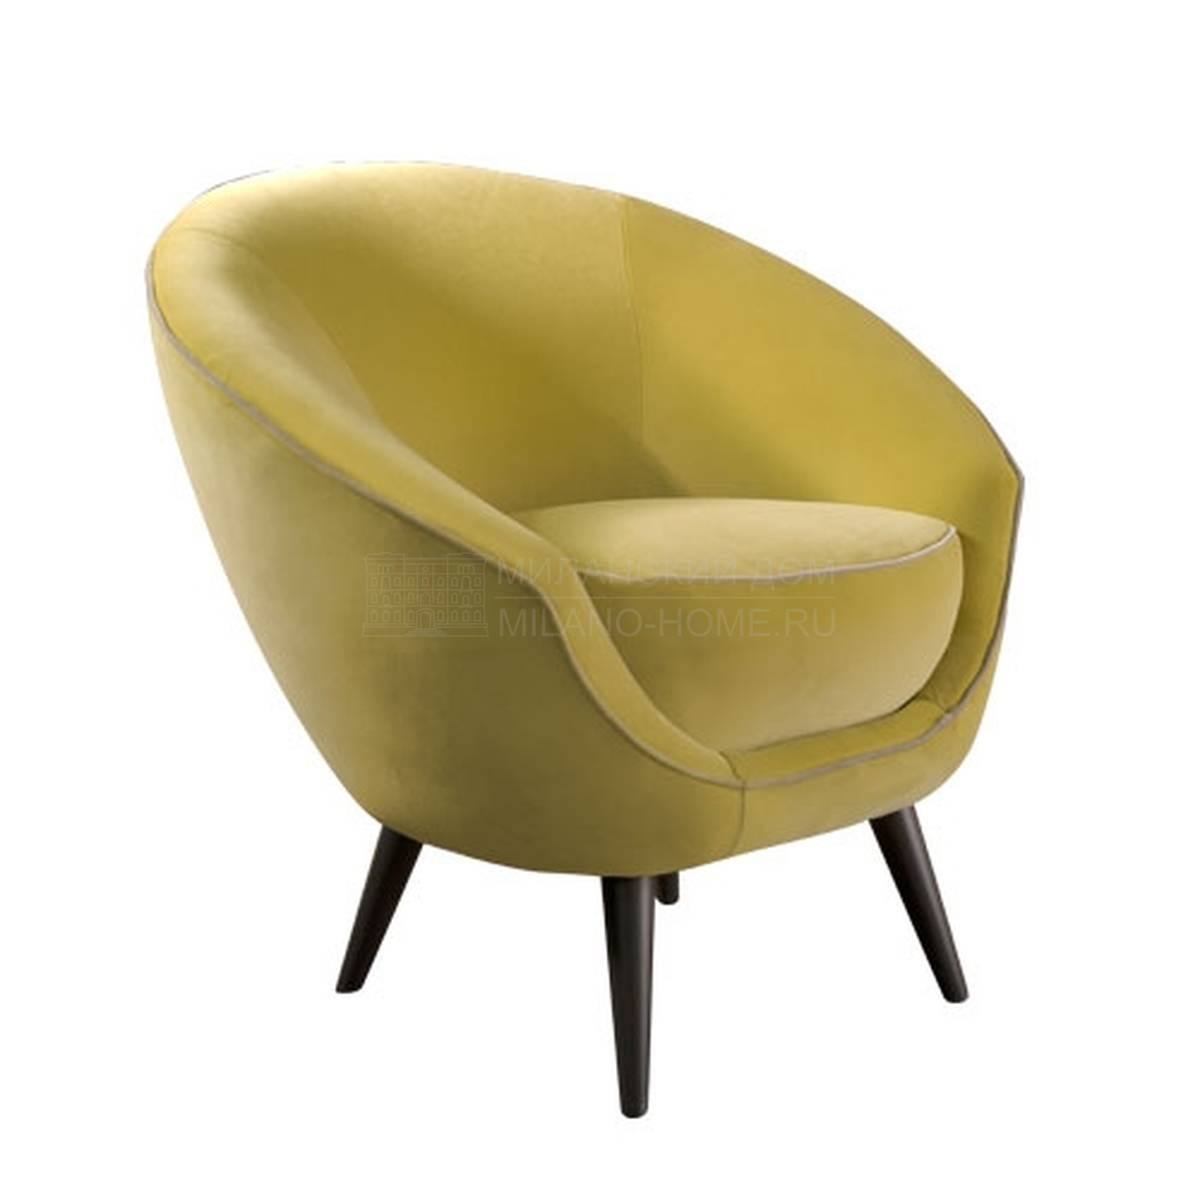 Круглое кресло Caterina 2/ armchair из Италии фабрики SOFTHOUSE